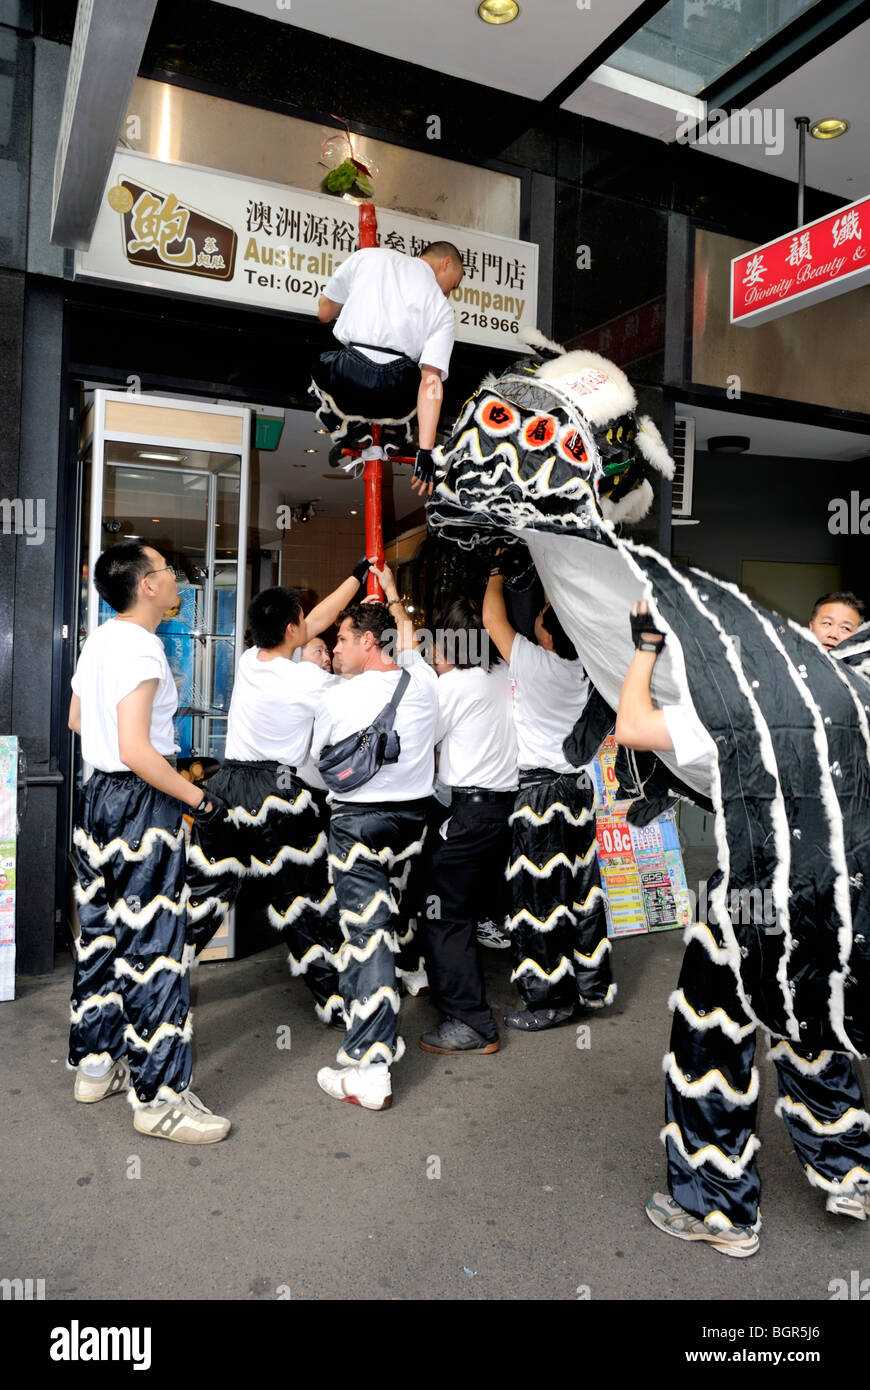 Un cinese la danza del Leone al di fuori di negozi nella Chinatown di Sydney e. Fai clic per i dettagli. Foto Stock